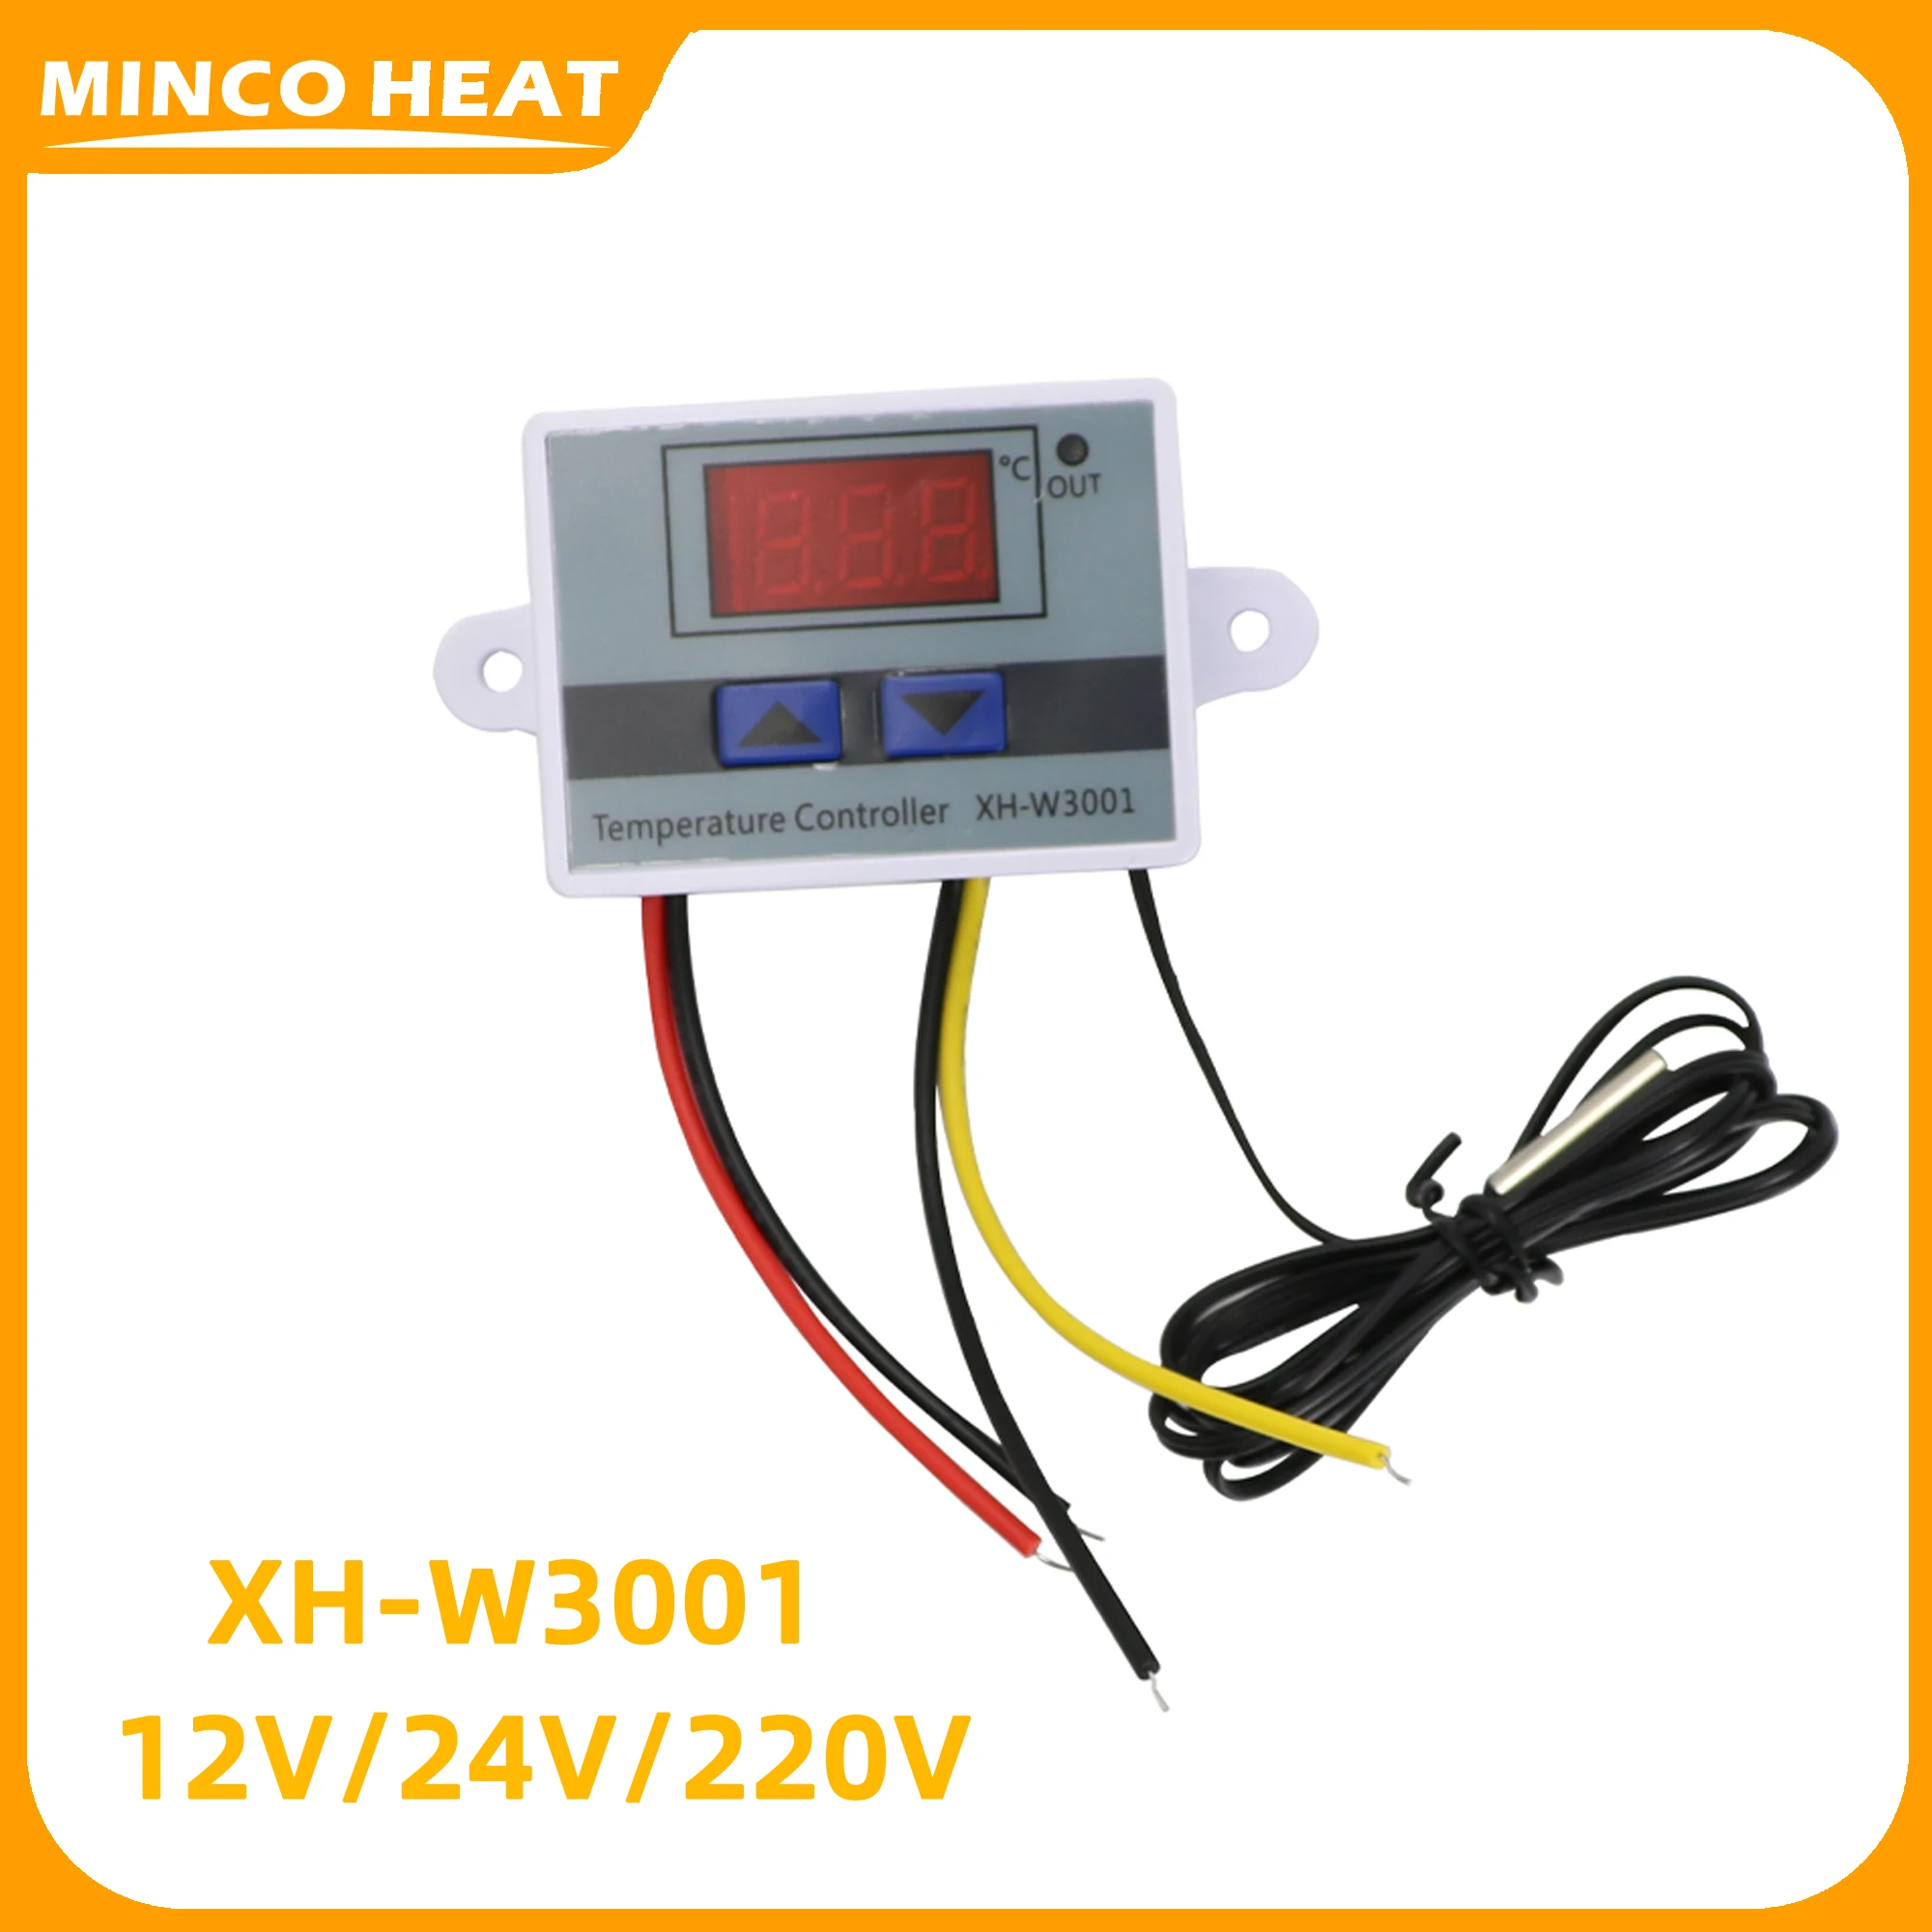 Tanio Minco Heat XH-W3001 mikro cyfrowy termostat sterujący sklep